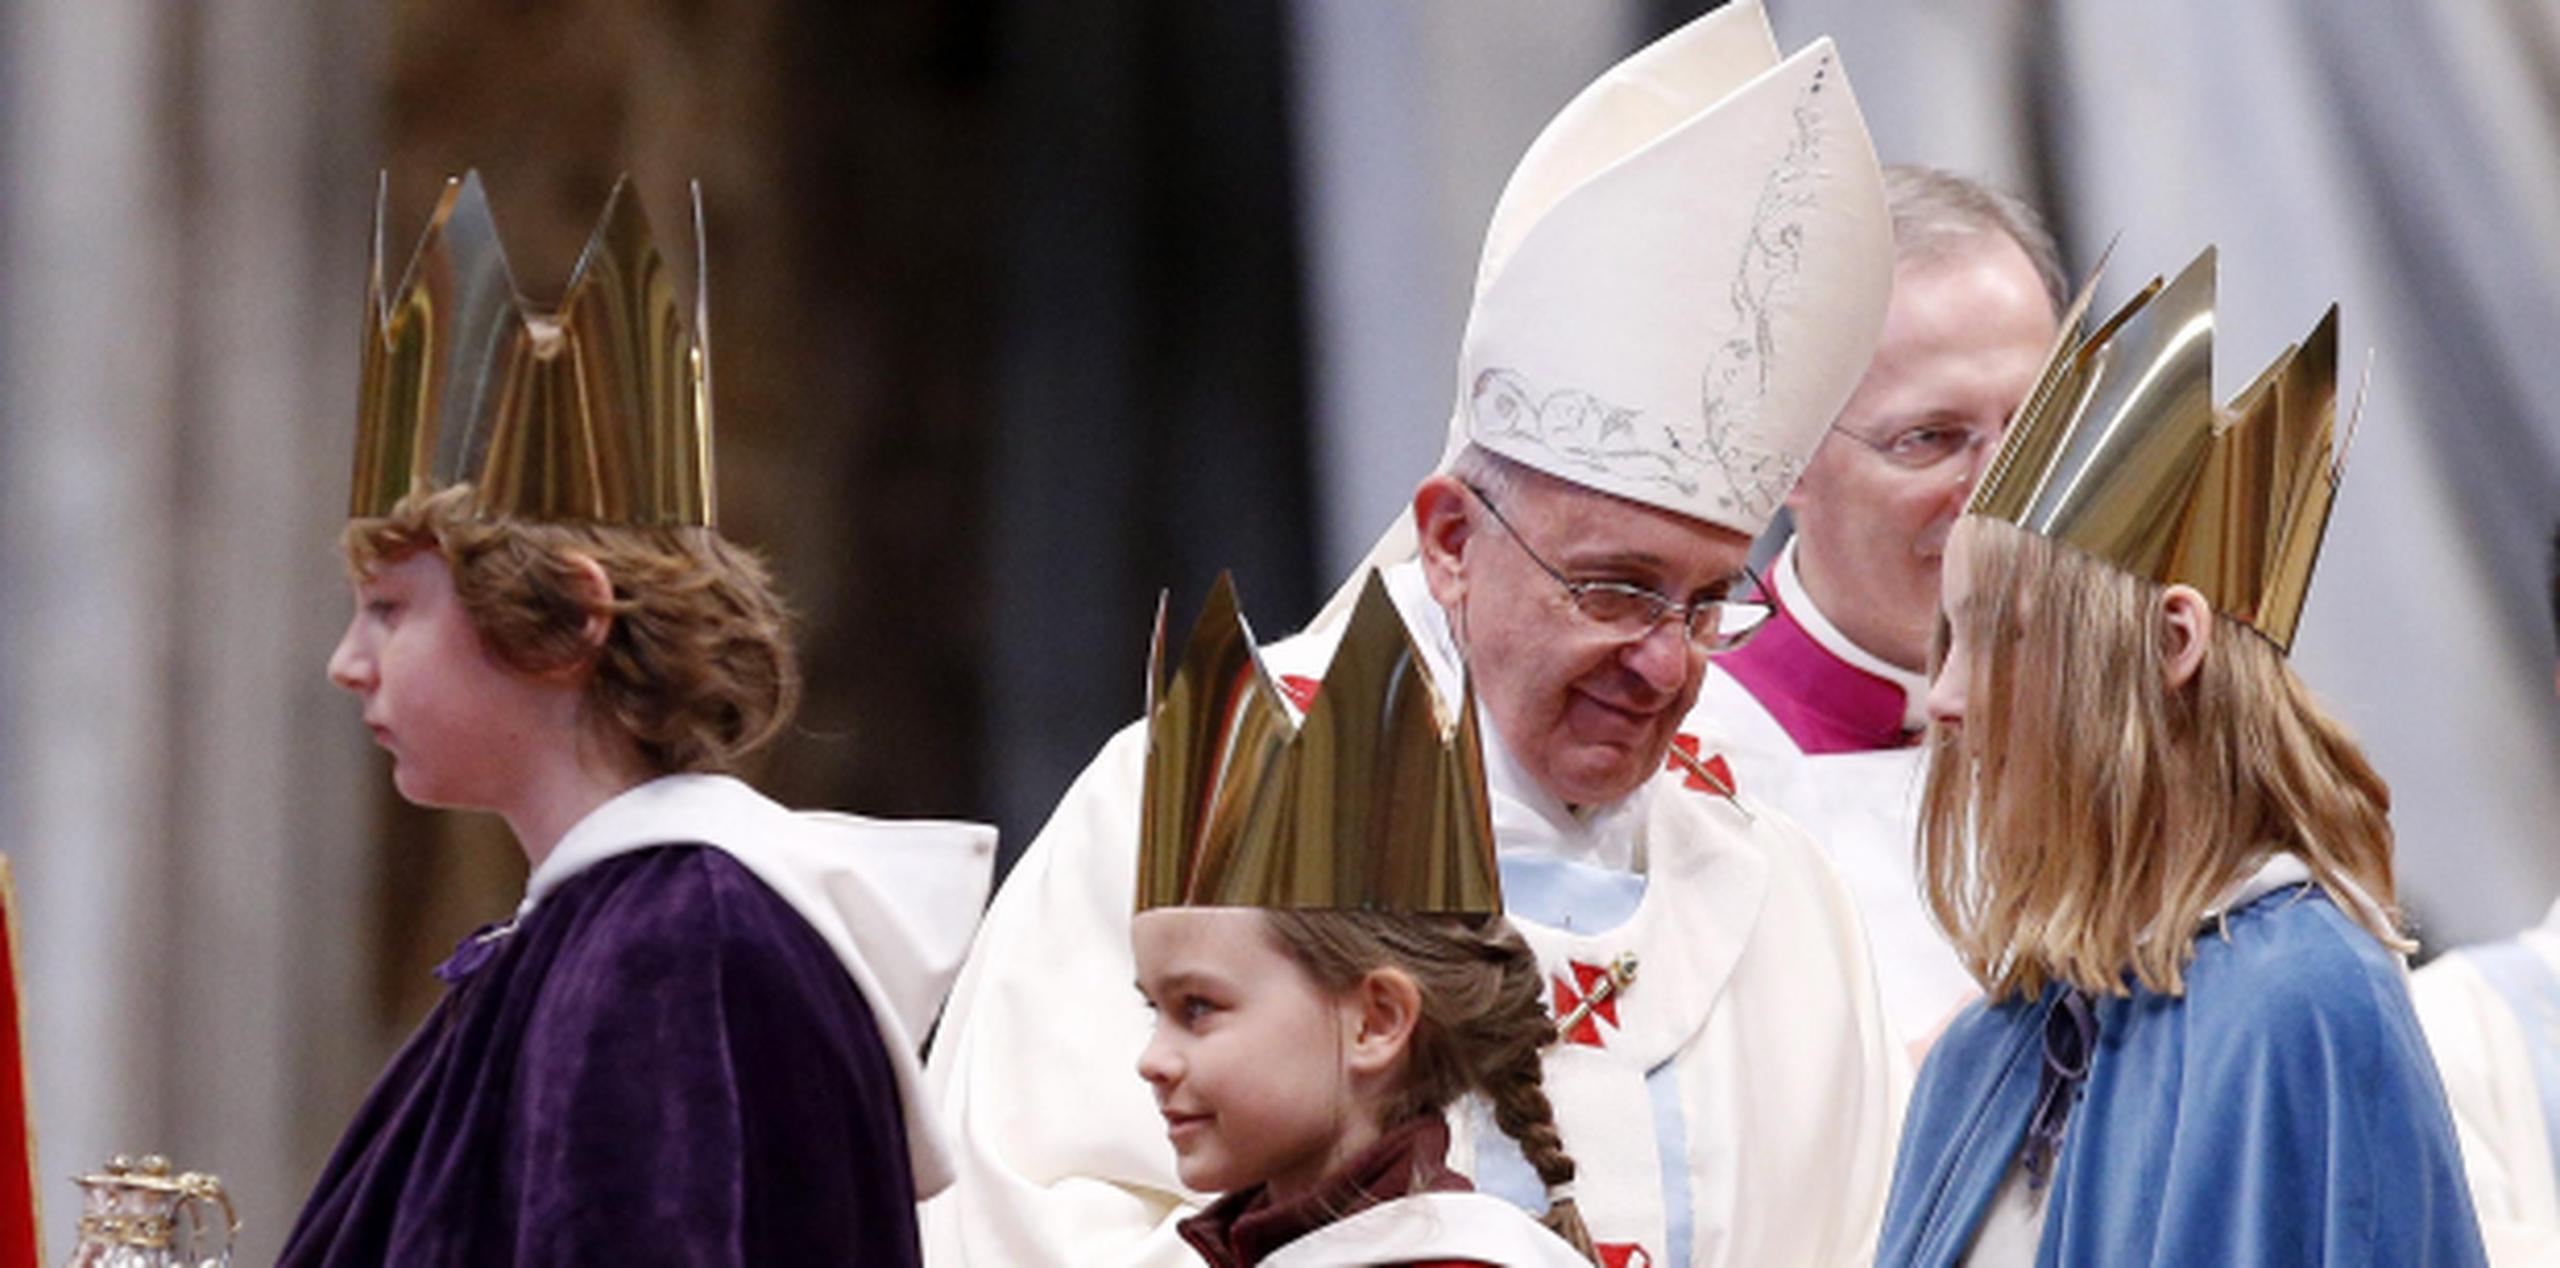 El papa Francisco afirma que la participación de las mujeres en la iglesia católica debe ser mayor. (Archivo)